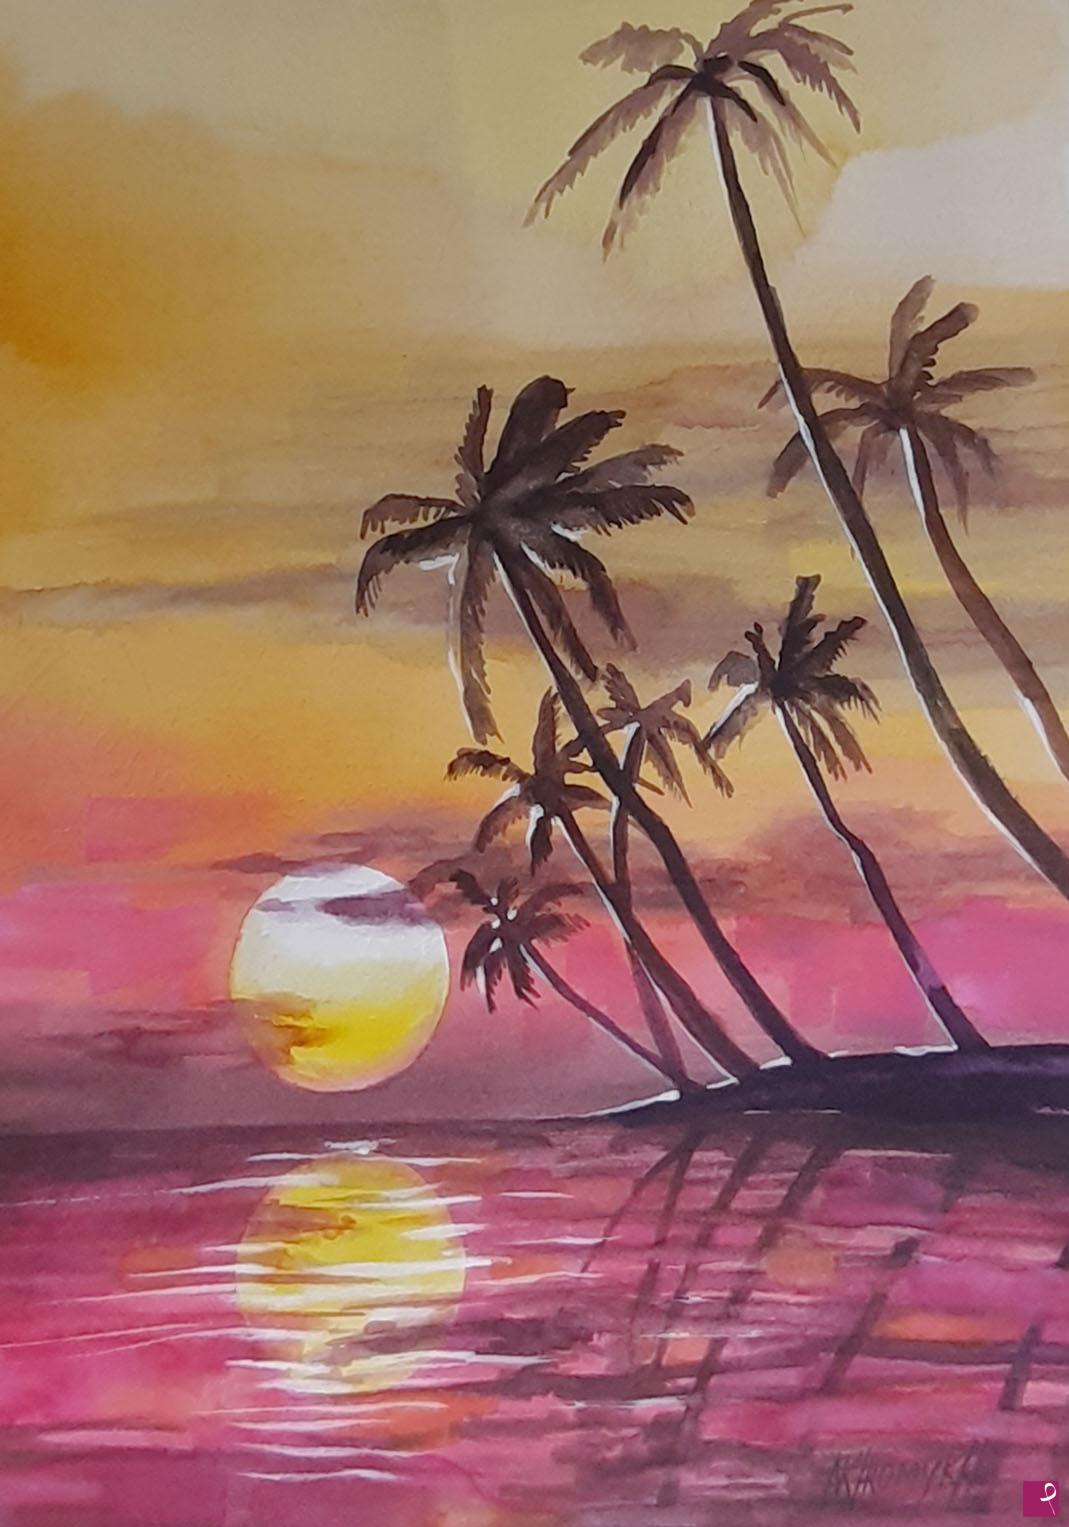 quadri con mare mosso in un tramonto da sogno